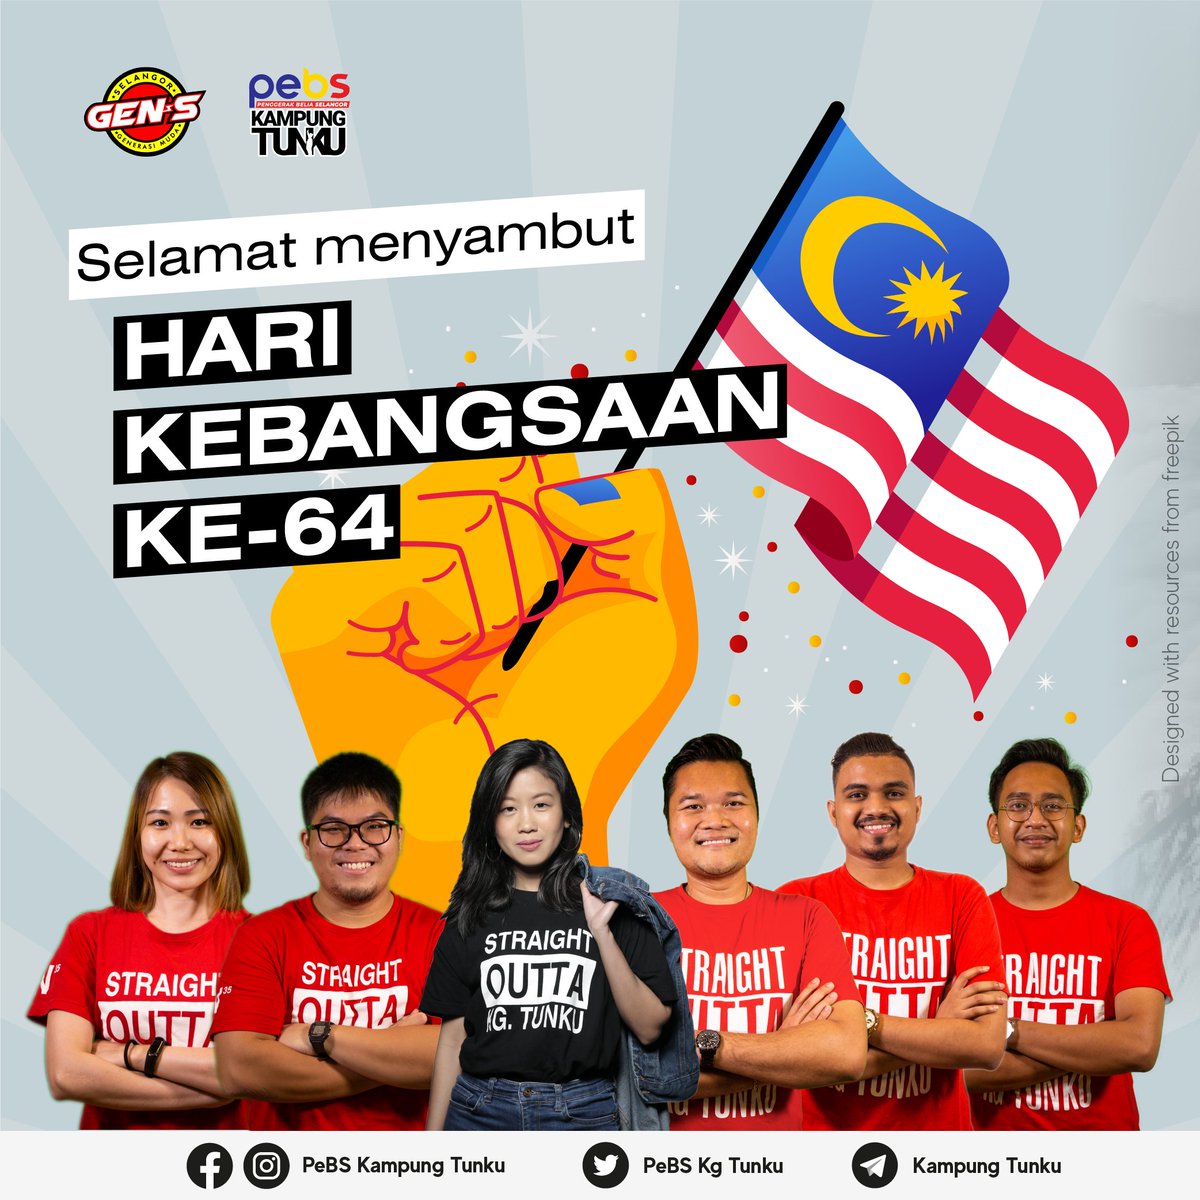 31 Ogos Tarikh Keramat
Bersama kita Menyambut Merdeka, Bersatu Berazam Penuh Semangat, 
Mari Pertahankan Kemerdekaan Kita.

Selamat Hari Kebangsaan Ke-64 🇲🇾

#SelangorPower
#StraightOuttaKgTunku